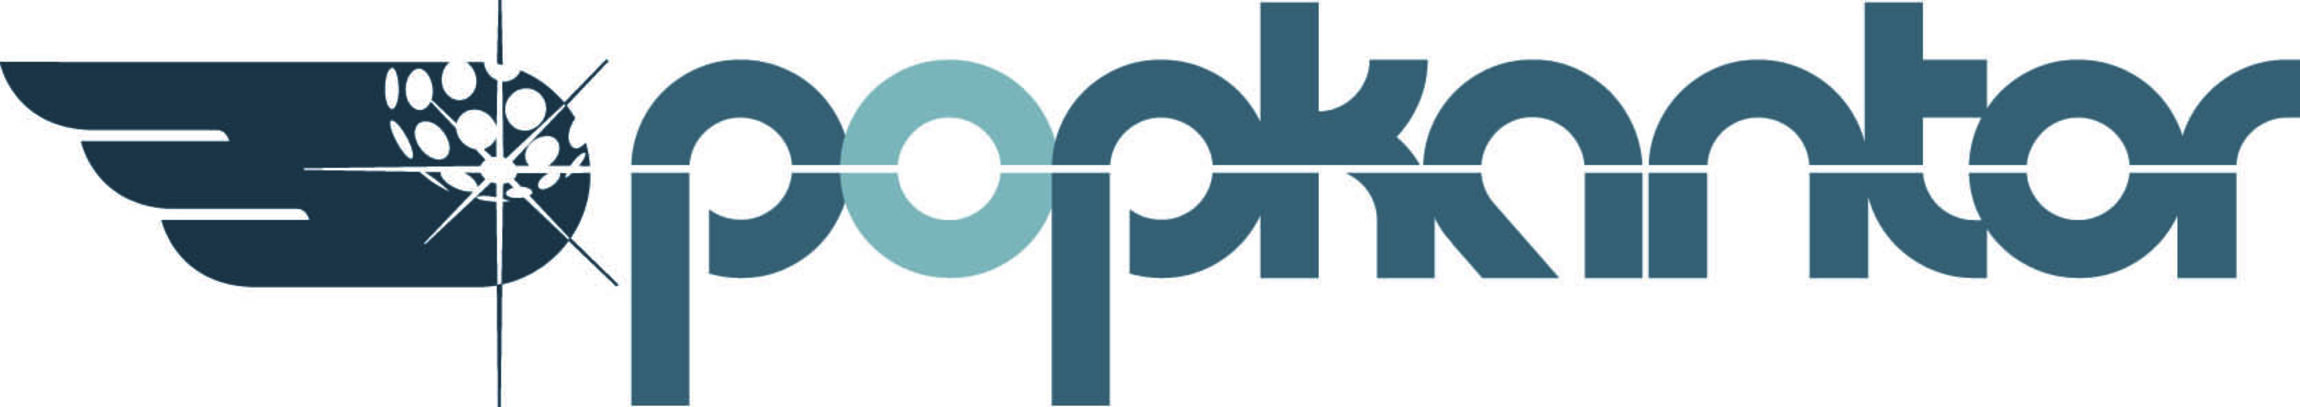 Logo_Popkantor_ca20cm